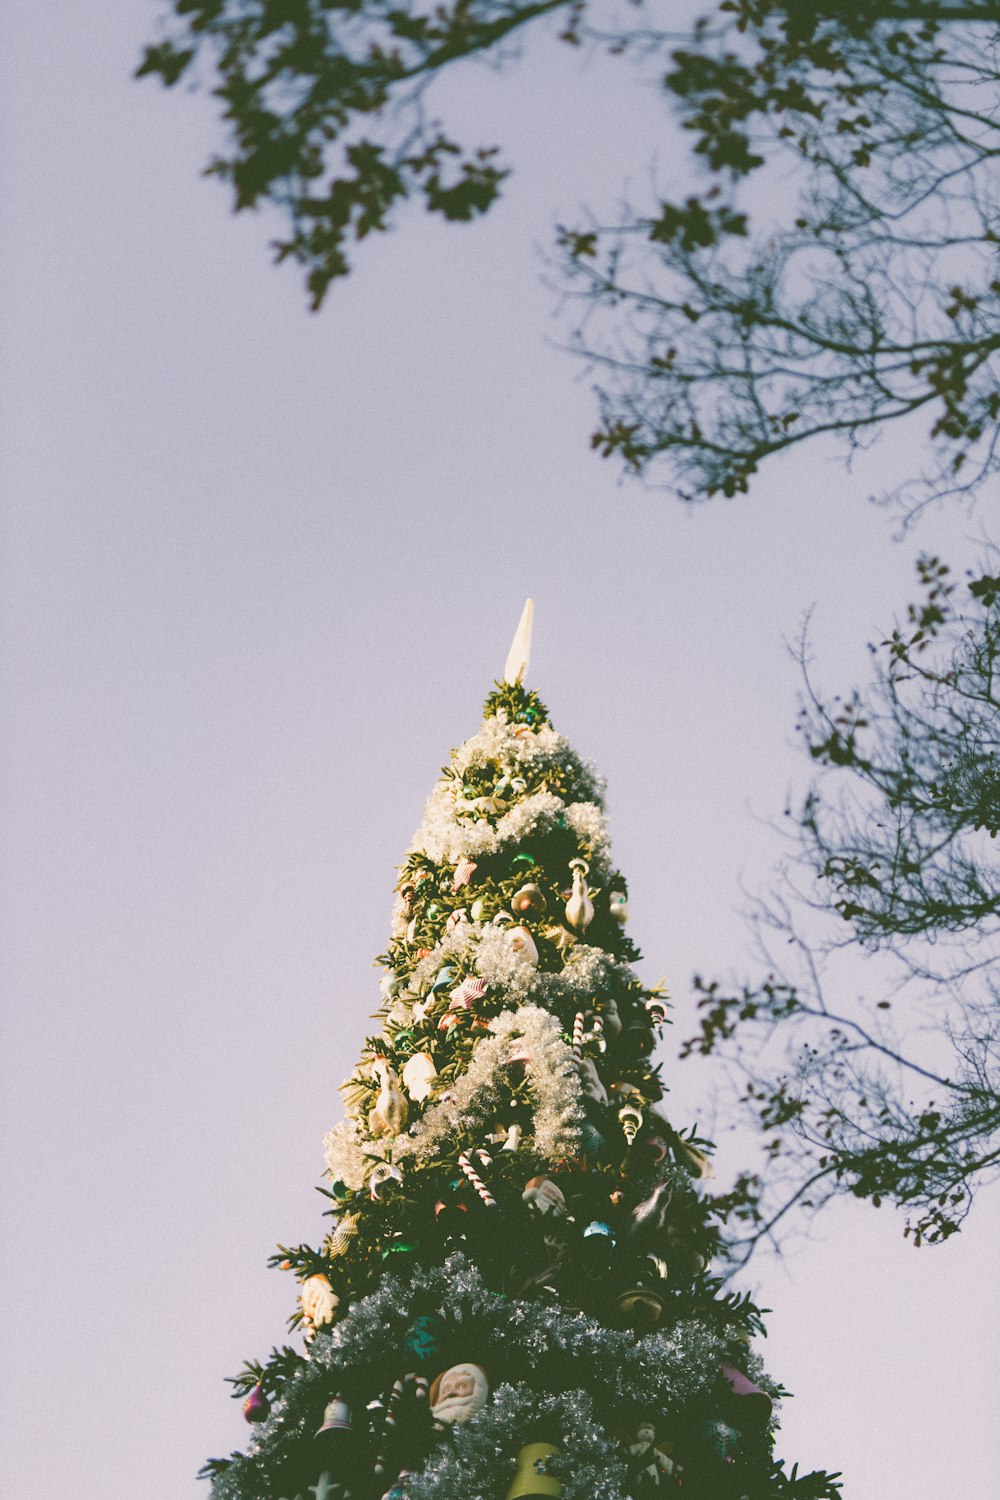 Một cây thông Giáng sinh vô cùng cao với nền trời xanh thăm thẳm sẽ khiến bạn trở thành tâm điểm của mọi cuộc trò chuyện trong phòng. Huýt sáo Giáng sinh và những hạt lấp lánh sẽ đem lại cho bạn cảm xúc của một mùa lễ hội tràn đầy niềm vui và hy vọng.